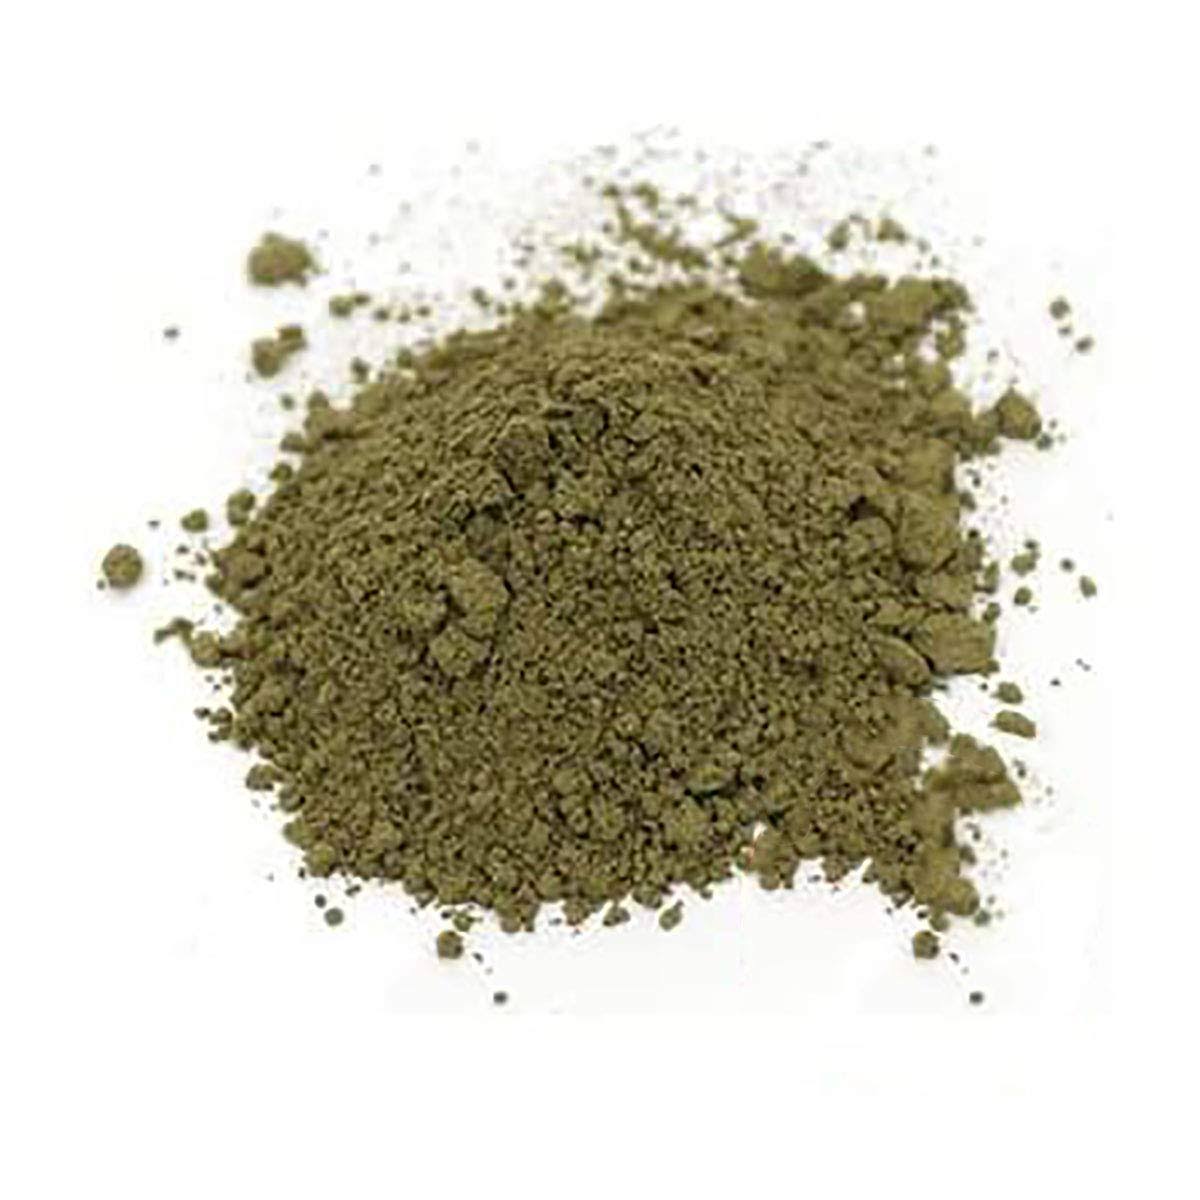 Organic Horny Goat Weed Powder - 2 oz